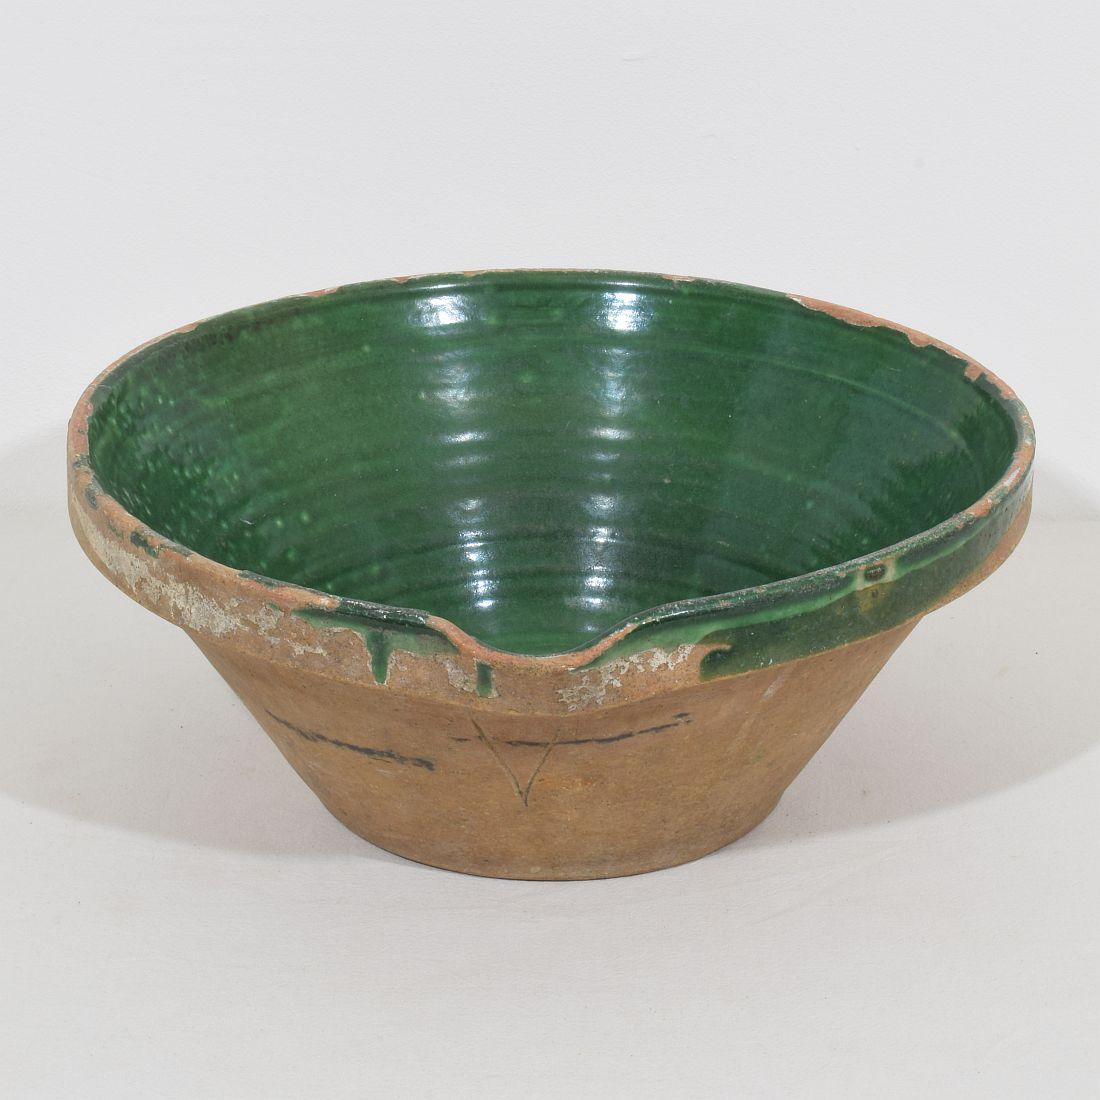 Très belle pièce de poterie provençale. Belle couleur verte,
France, vers 1850.
Bon état mais altéré.